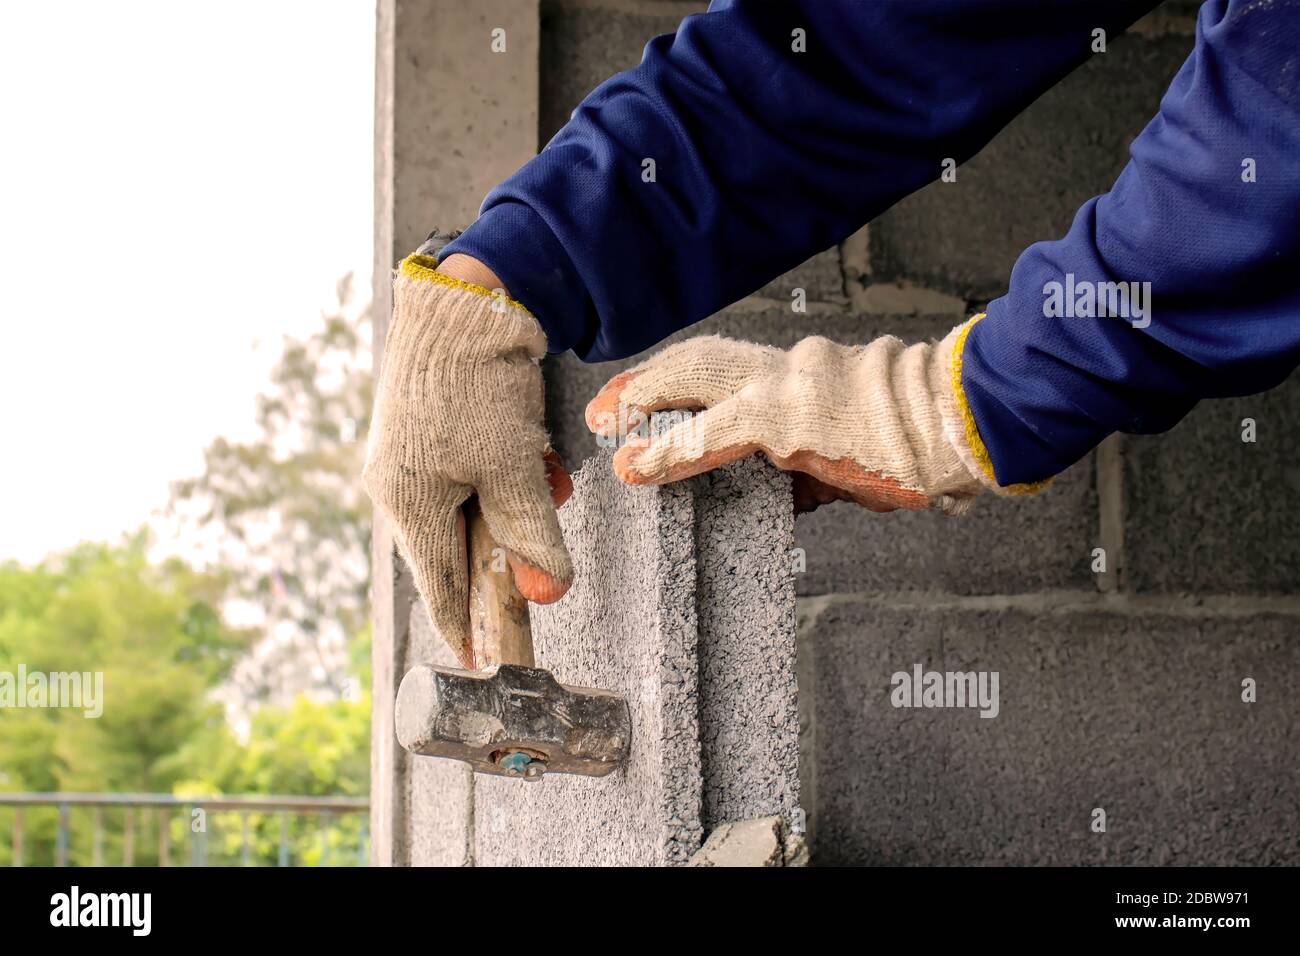 Les ouvriers de la construction utilisent le marteau pour frapper les briques au niveau pour construire des murs de ciment, la construction de maison et les idées de décoration intérieure. Banque D'Images